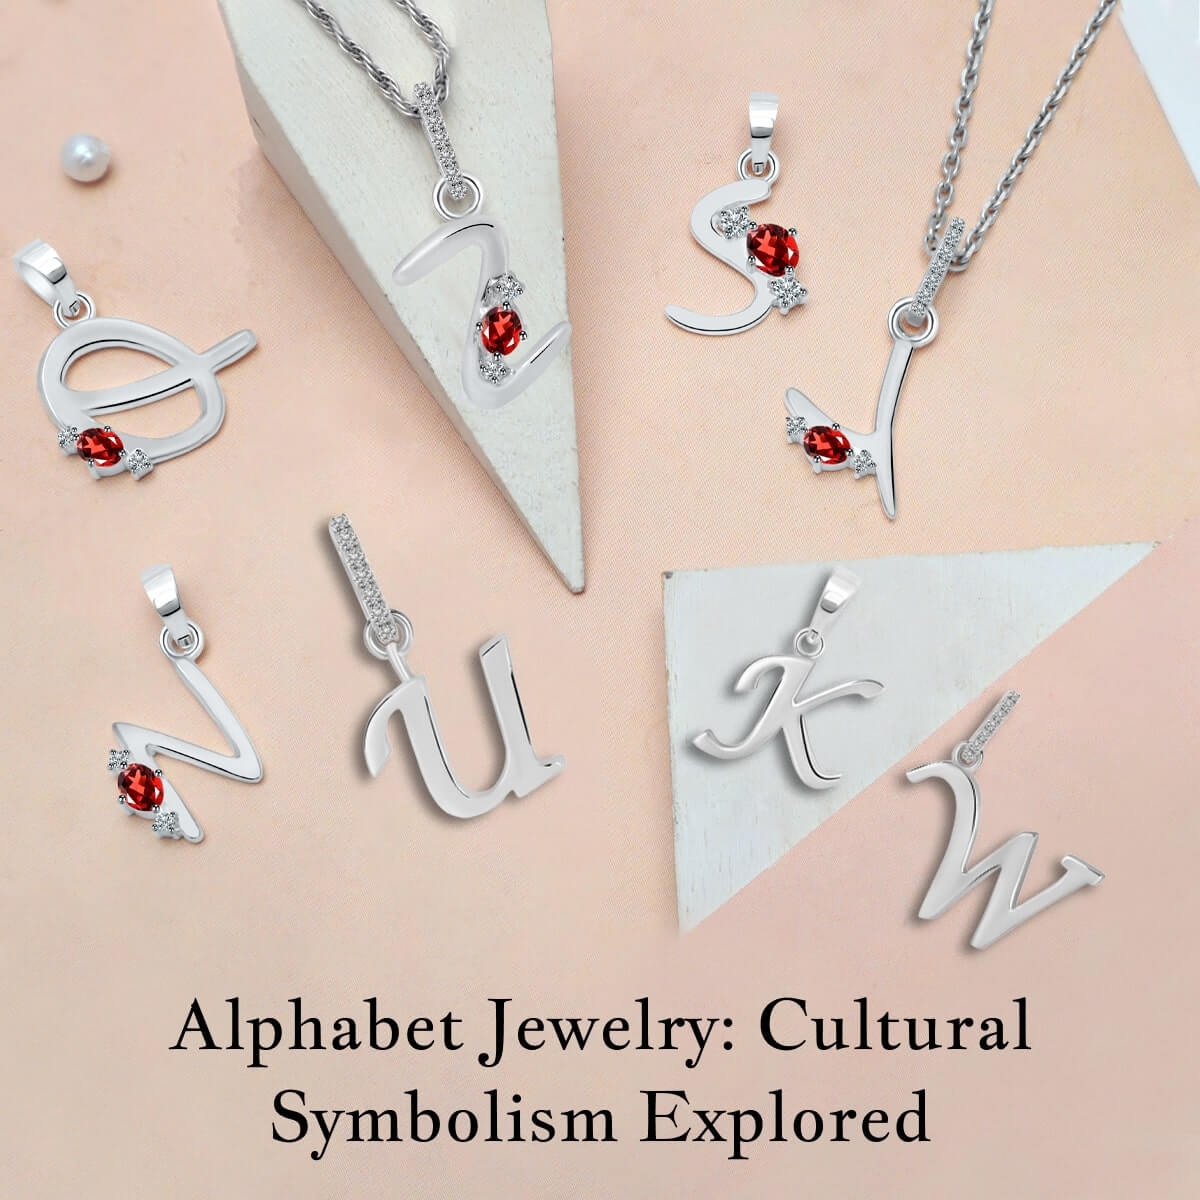 benefits of Alphabet Jewelry